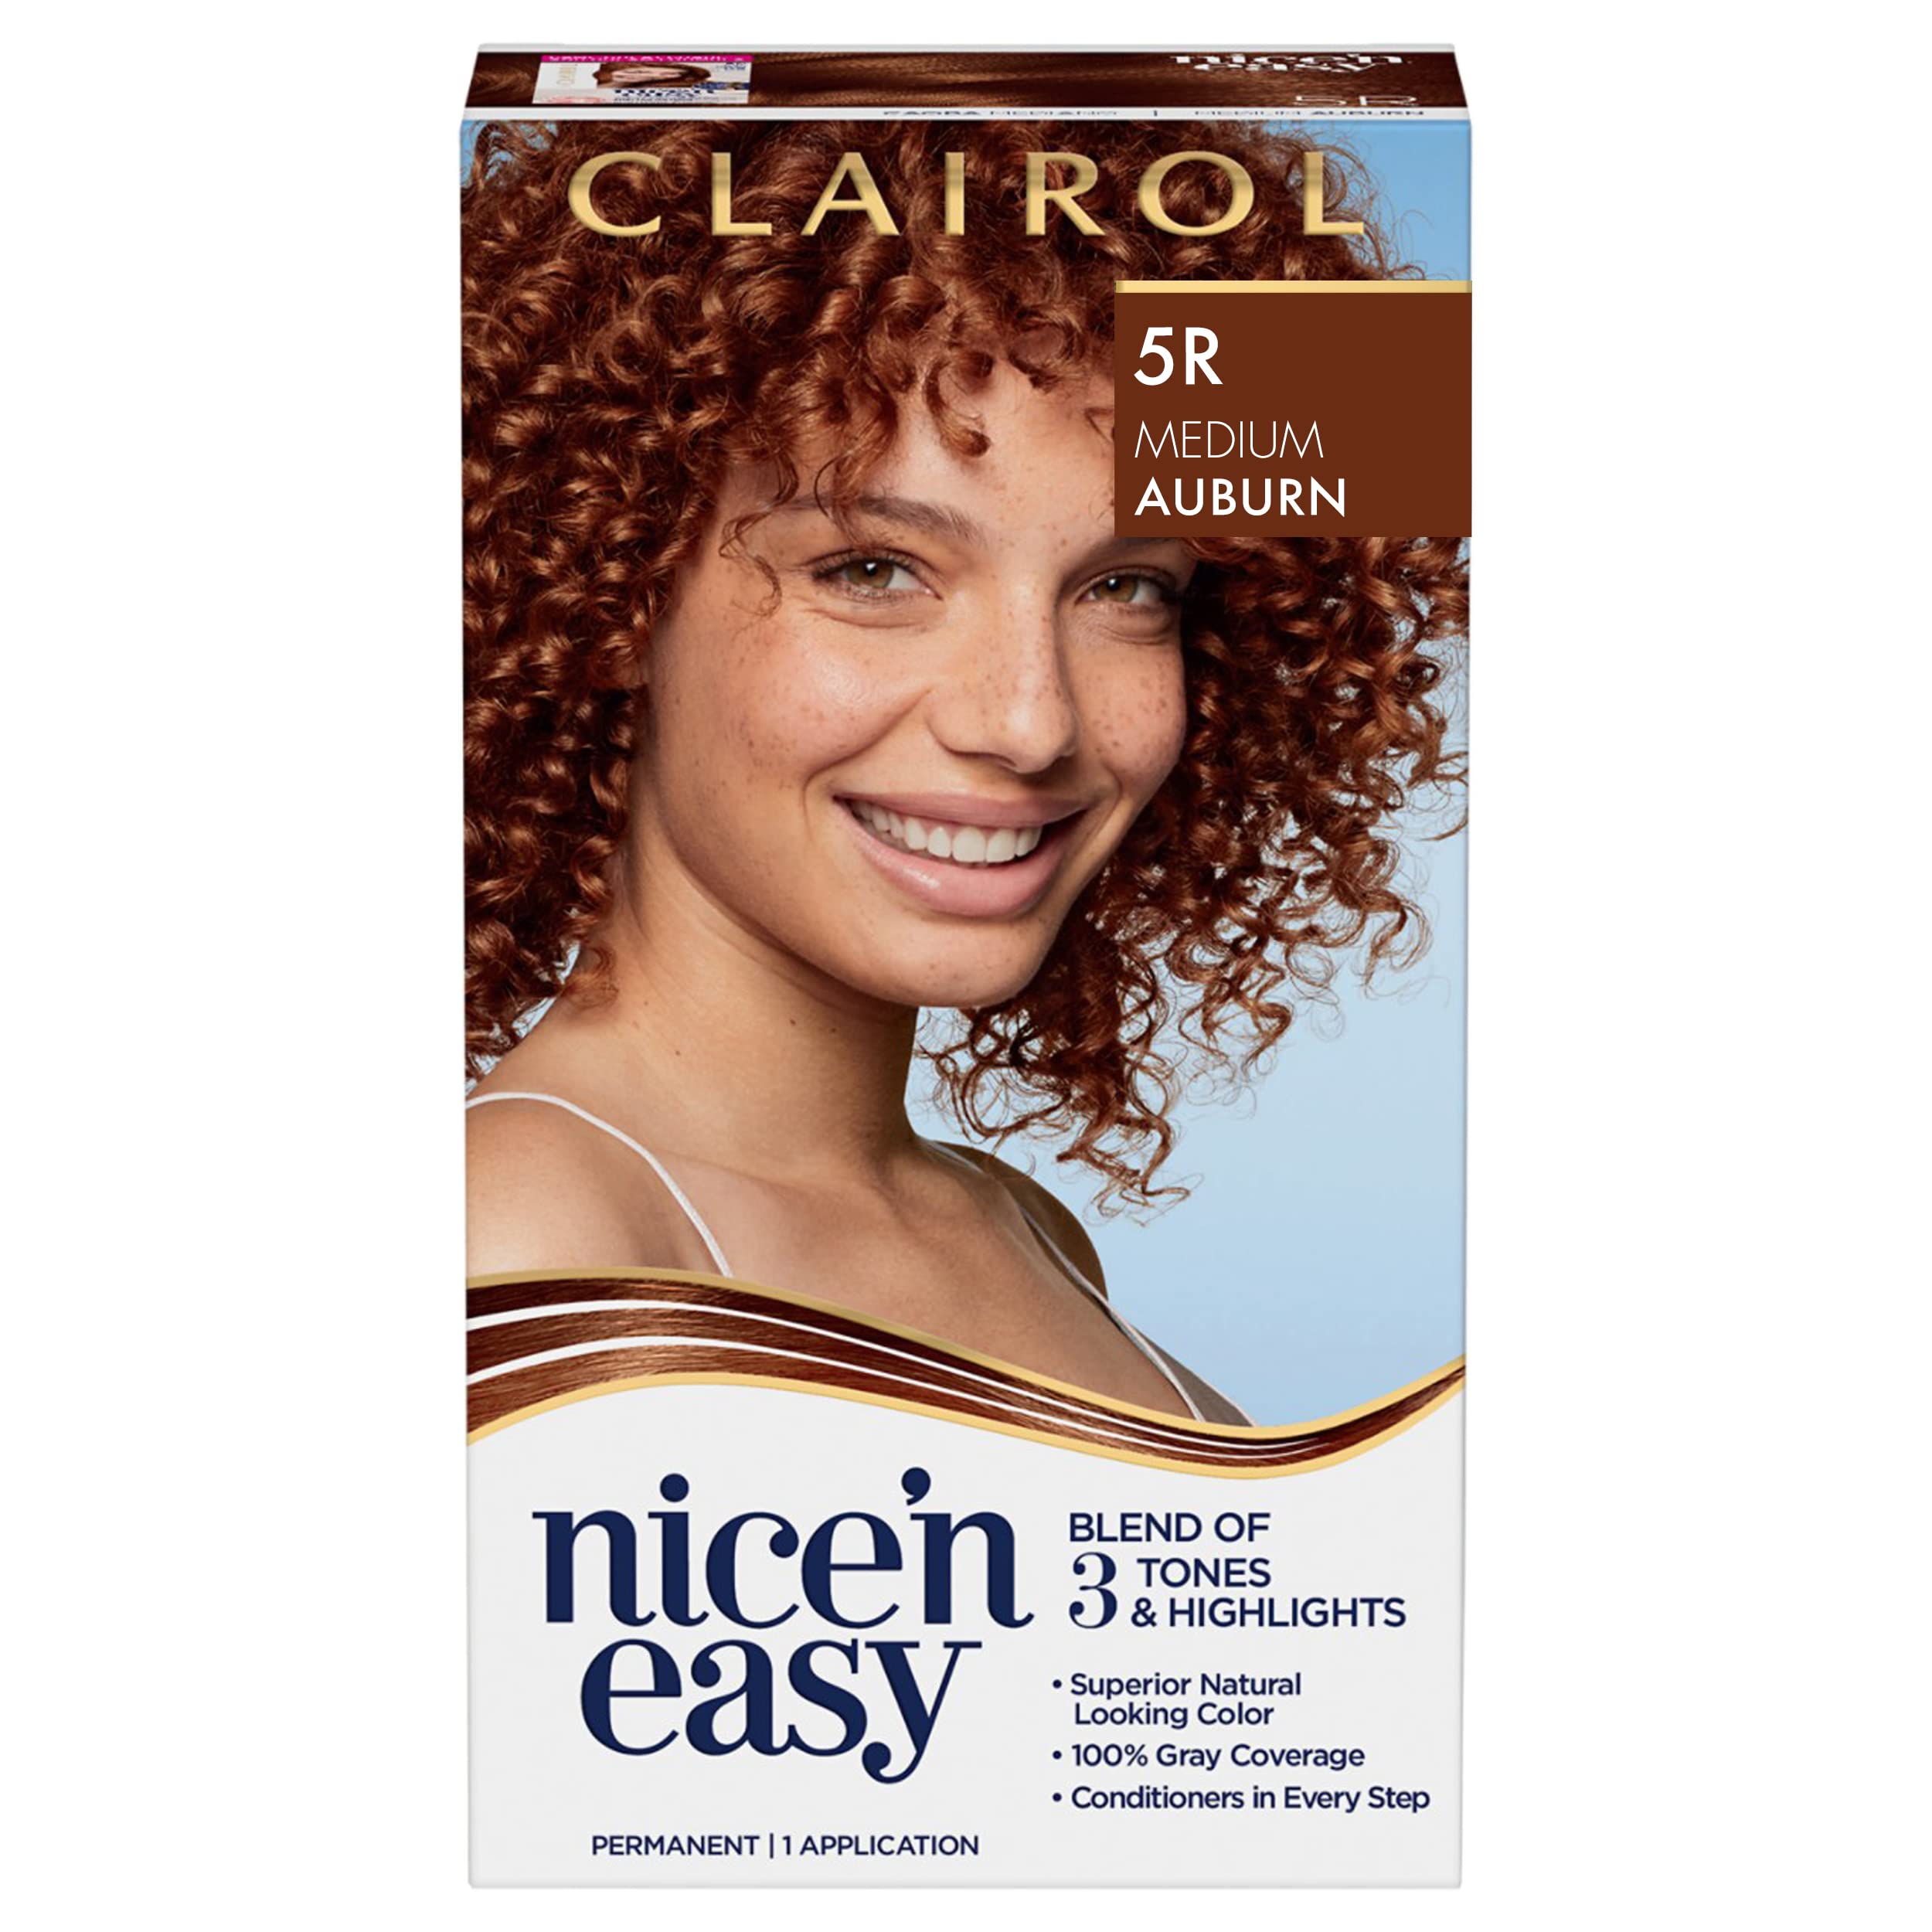 Clairol Nice'n Easy Permanent Hair Dye, 5R Medium Auburn Hair Color, Pack  of 1 5R